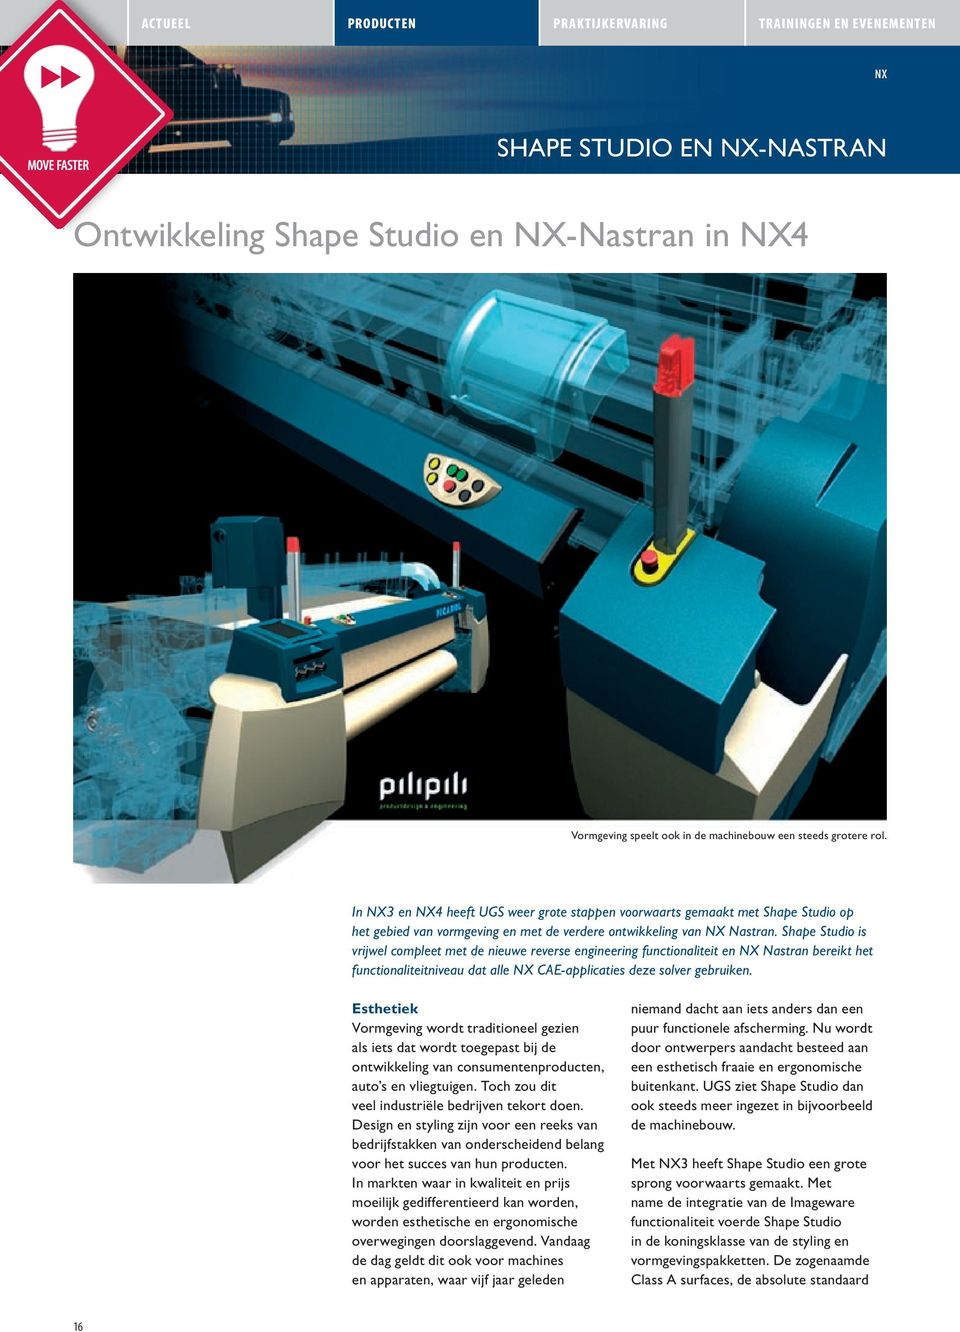 Shape Studio is vrijwel compleet met de nieuwe reverse engineering functionaliteit en NX Nastran bereikt het functionaliteitniveau dat alle NX CAE-applicaties deze solver gebruiken.